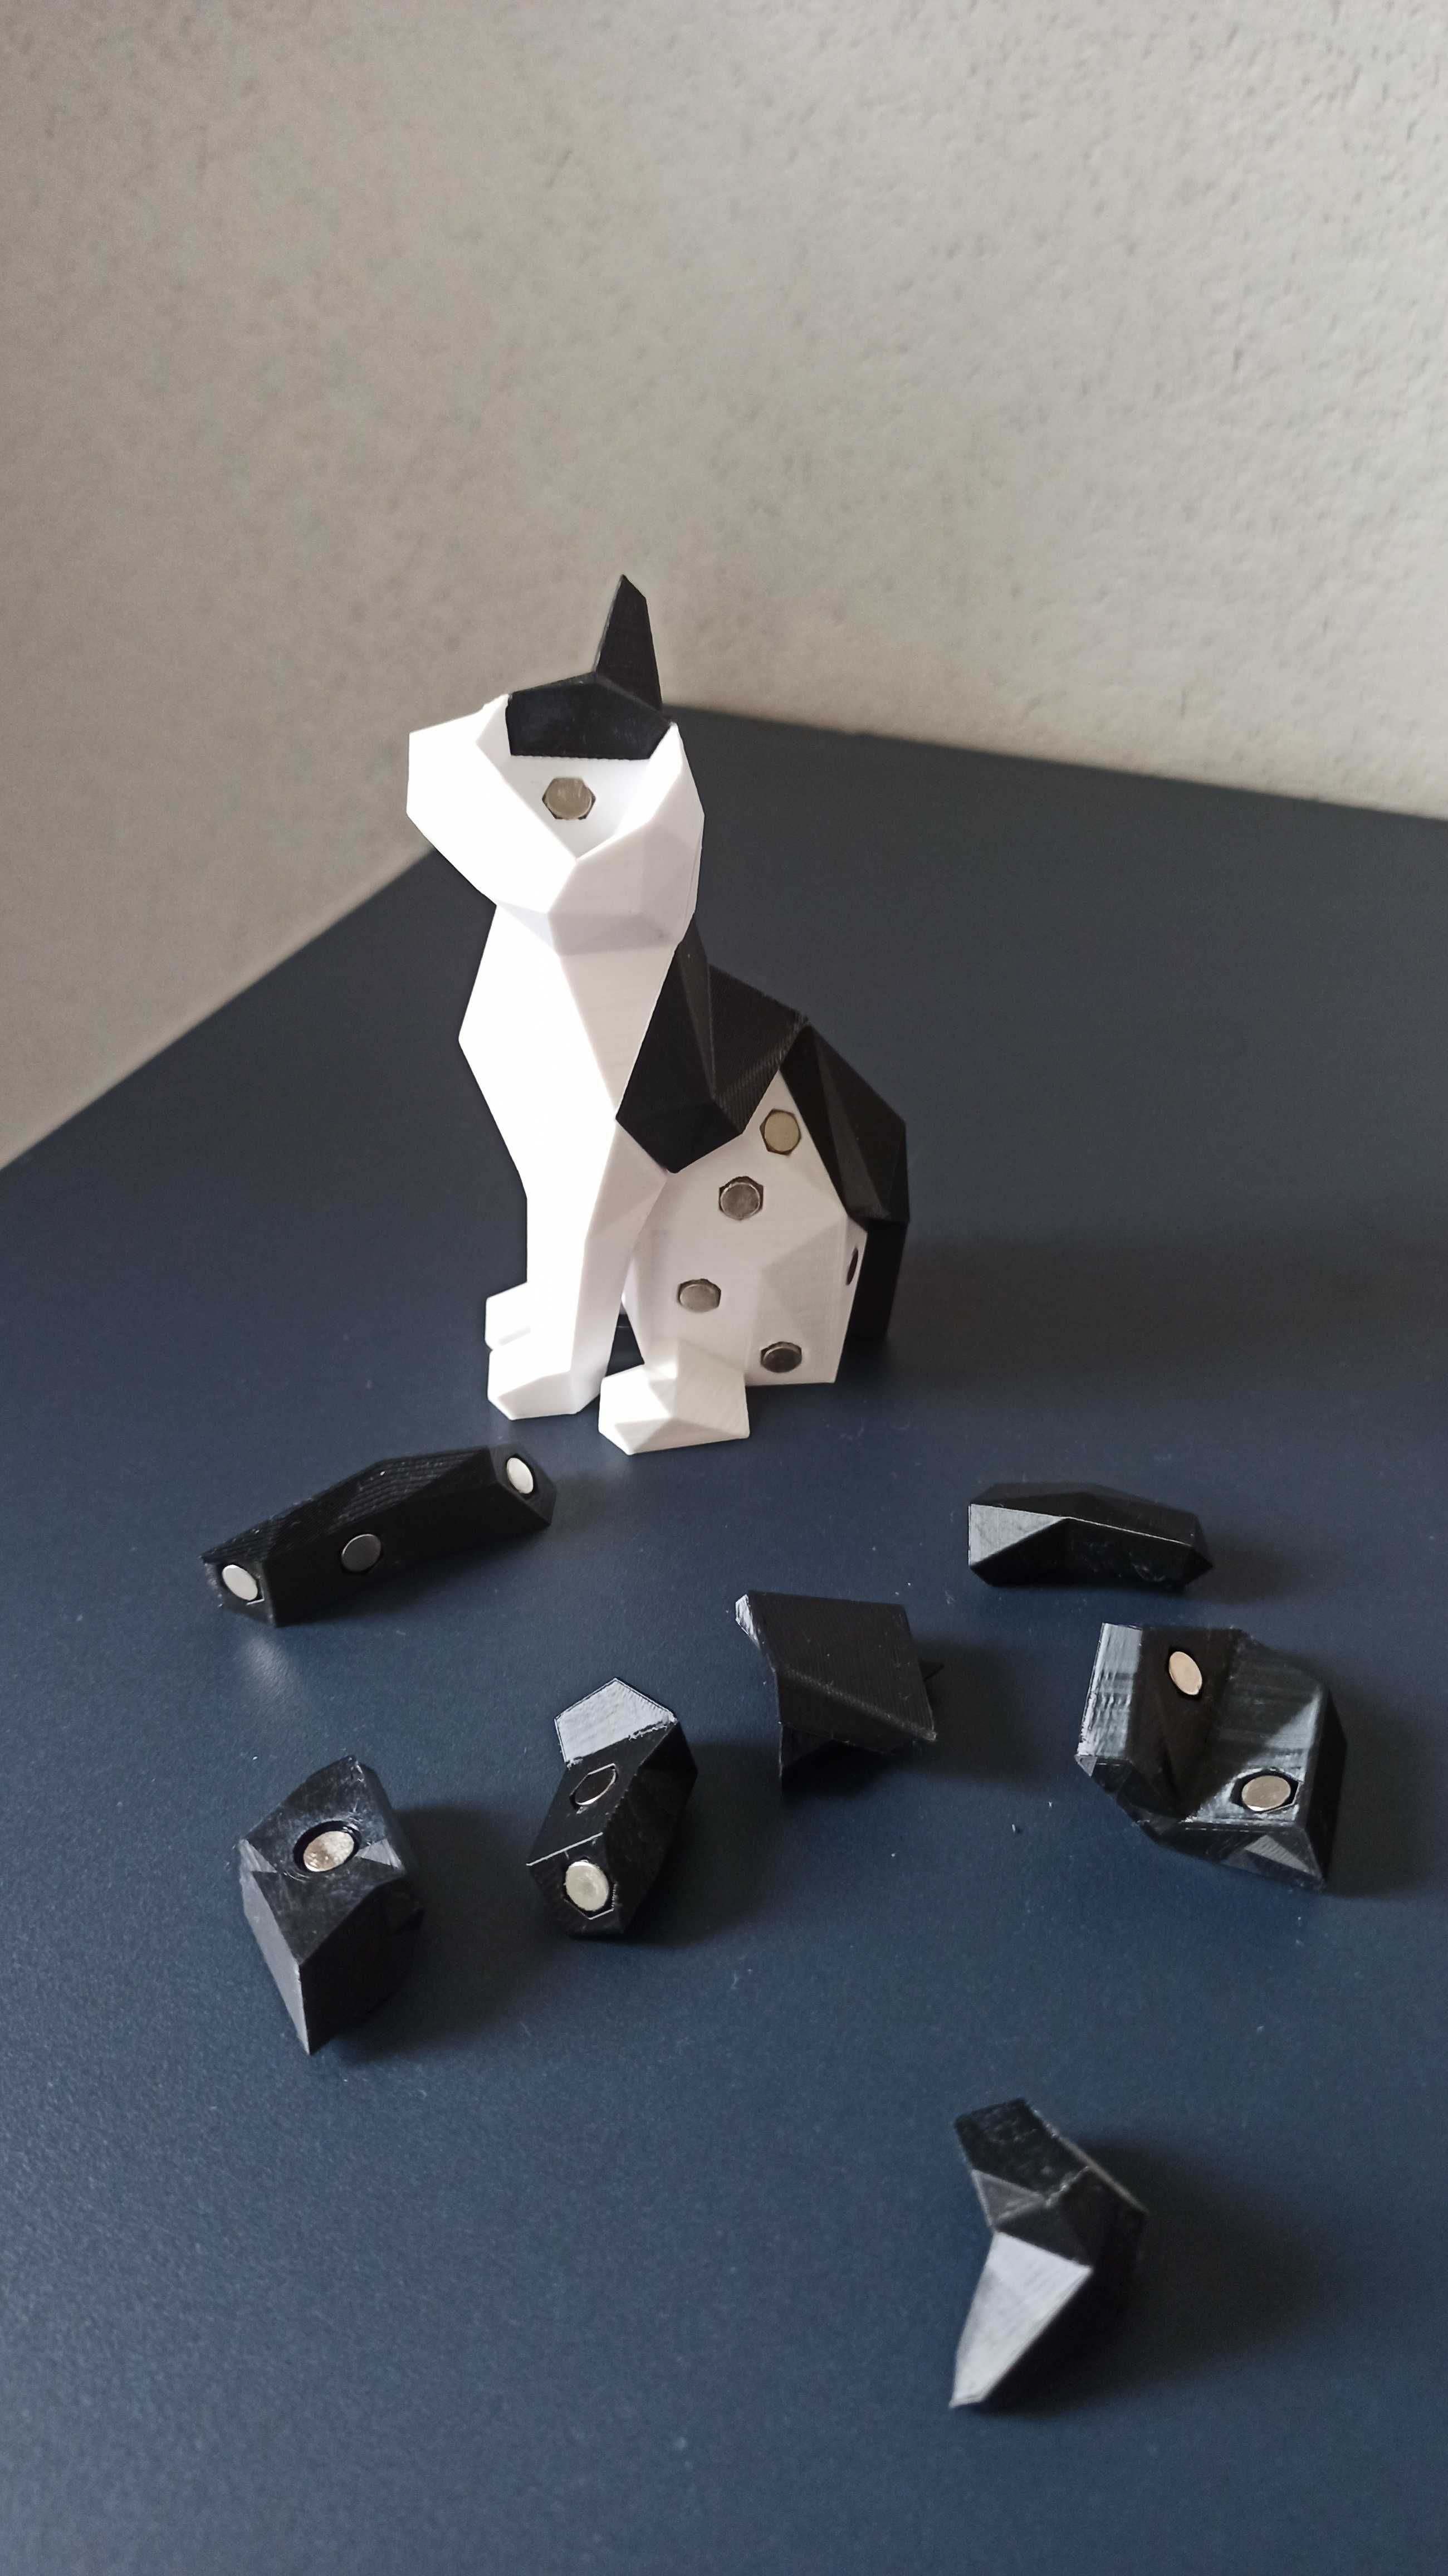 Kot 6 Antystresowa łamigłówka geometryczna puzzle magnetyczne